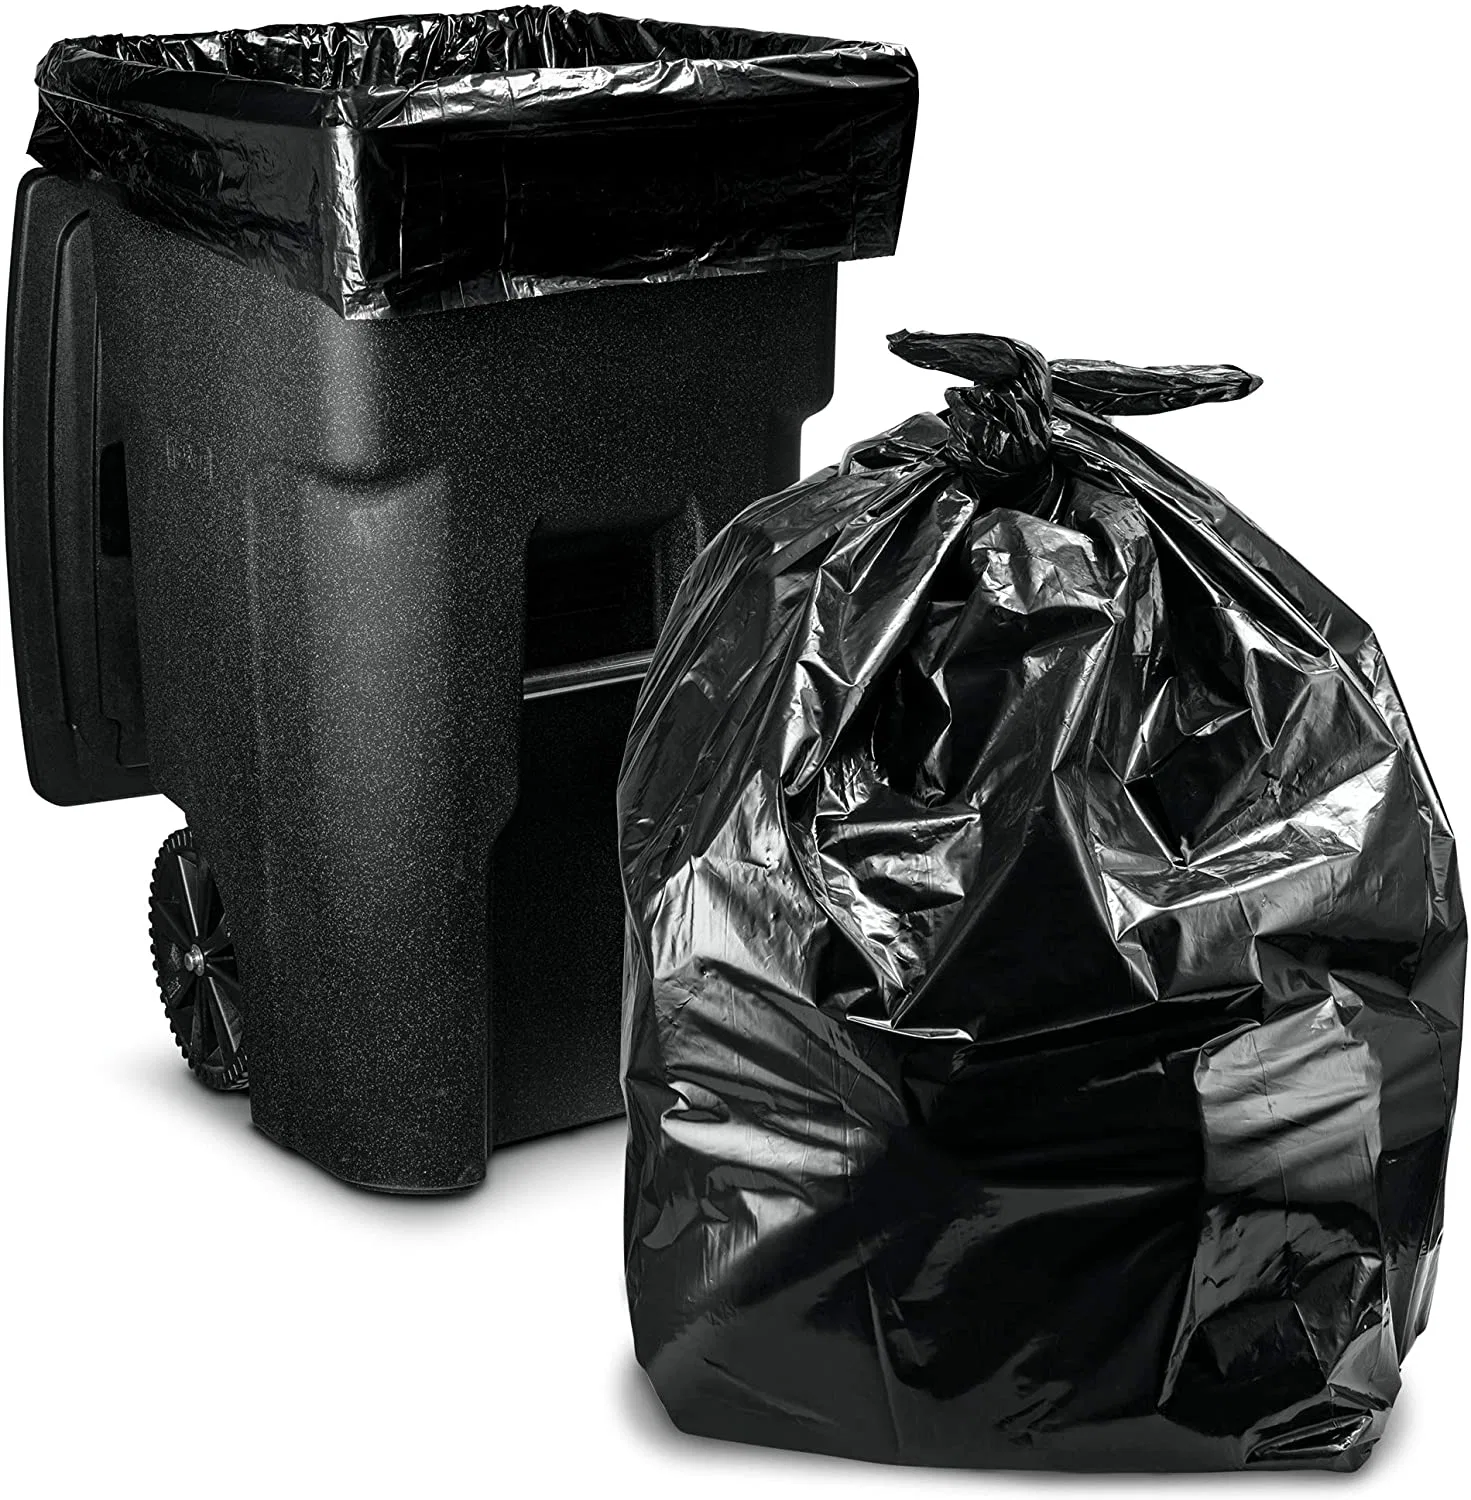 Großhandel große schwarze Heavy Duty kann Liner mit Twist Tie große 95, 96, 100 Gallone Müllbeutel, Papierkorb kann Liners Super Value Pack